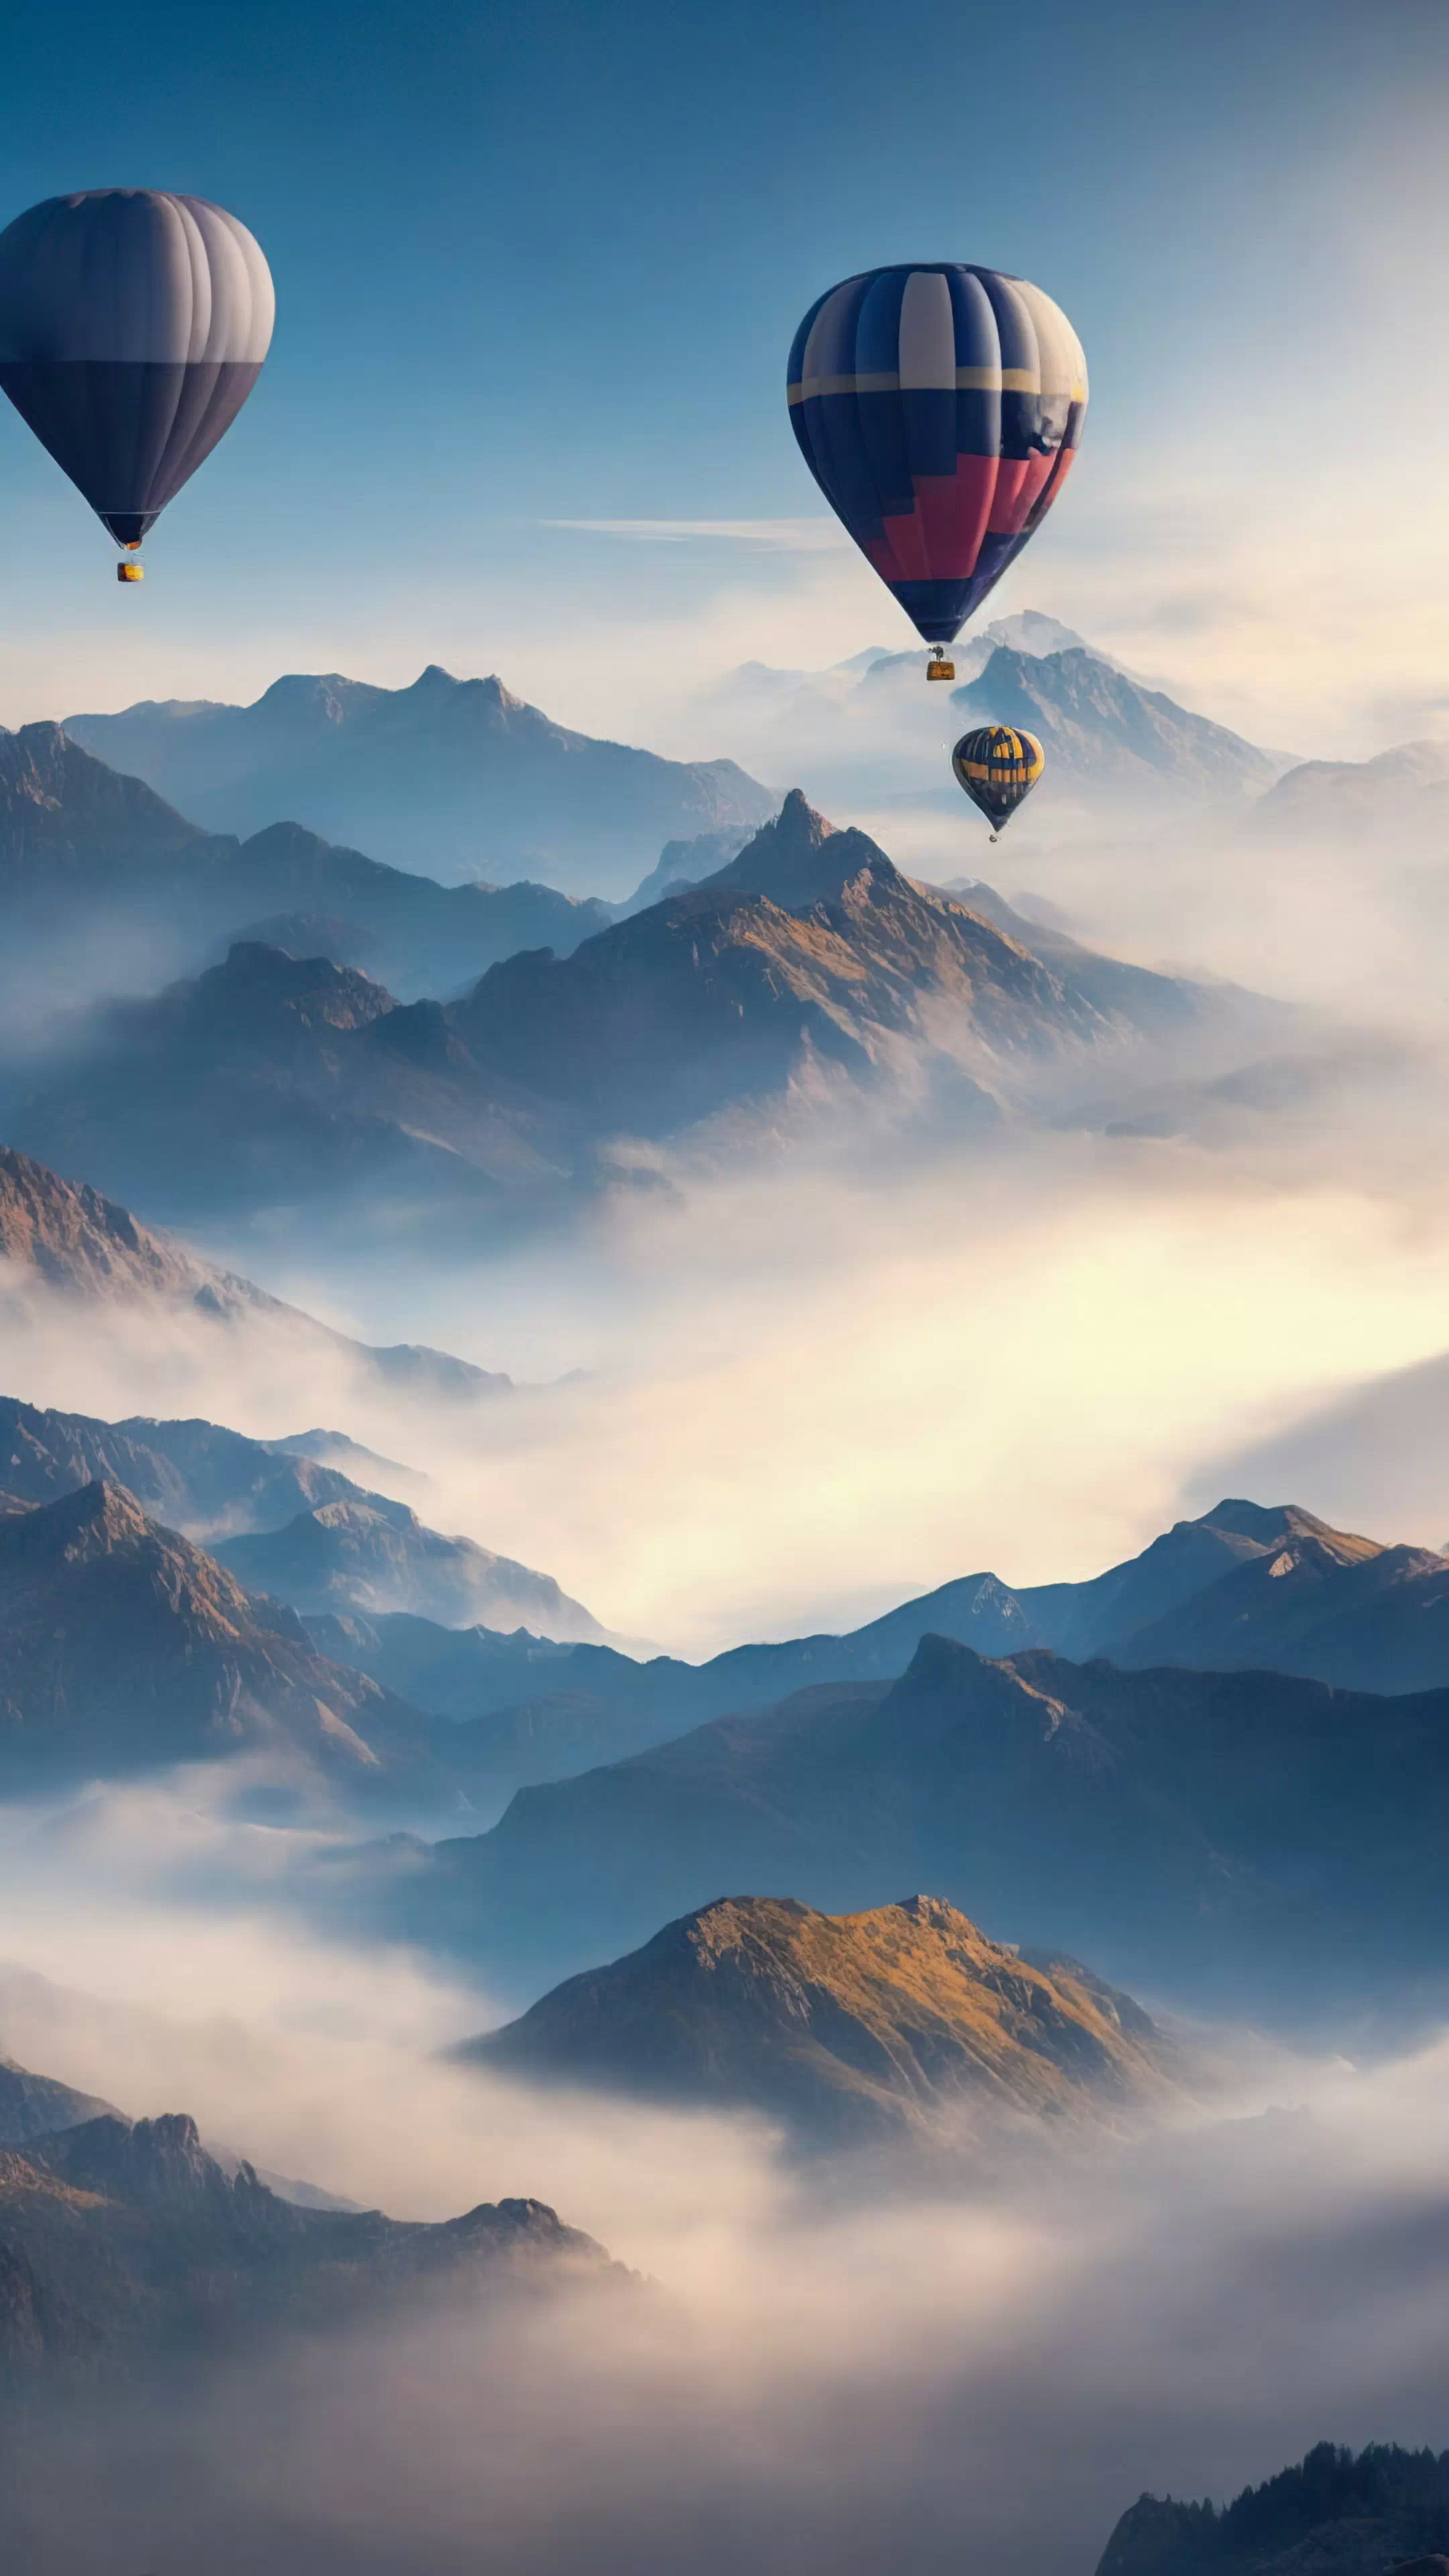 Apportez la beauté des cieux à votre téléphone avec notre fond d'écran de nature en HD, capturant un ciel surréaliste rempli de montgolfières au-dessus d'un paysage montagneux, et laissez votre appareil devenir une fenêtre vers un monde de fantaisie.